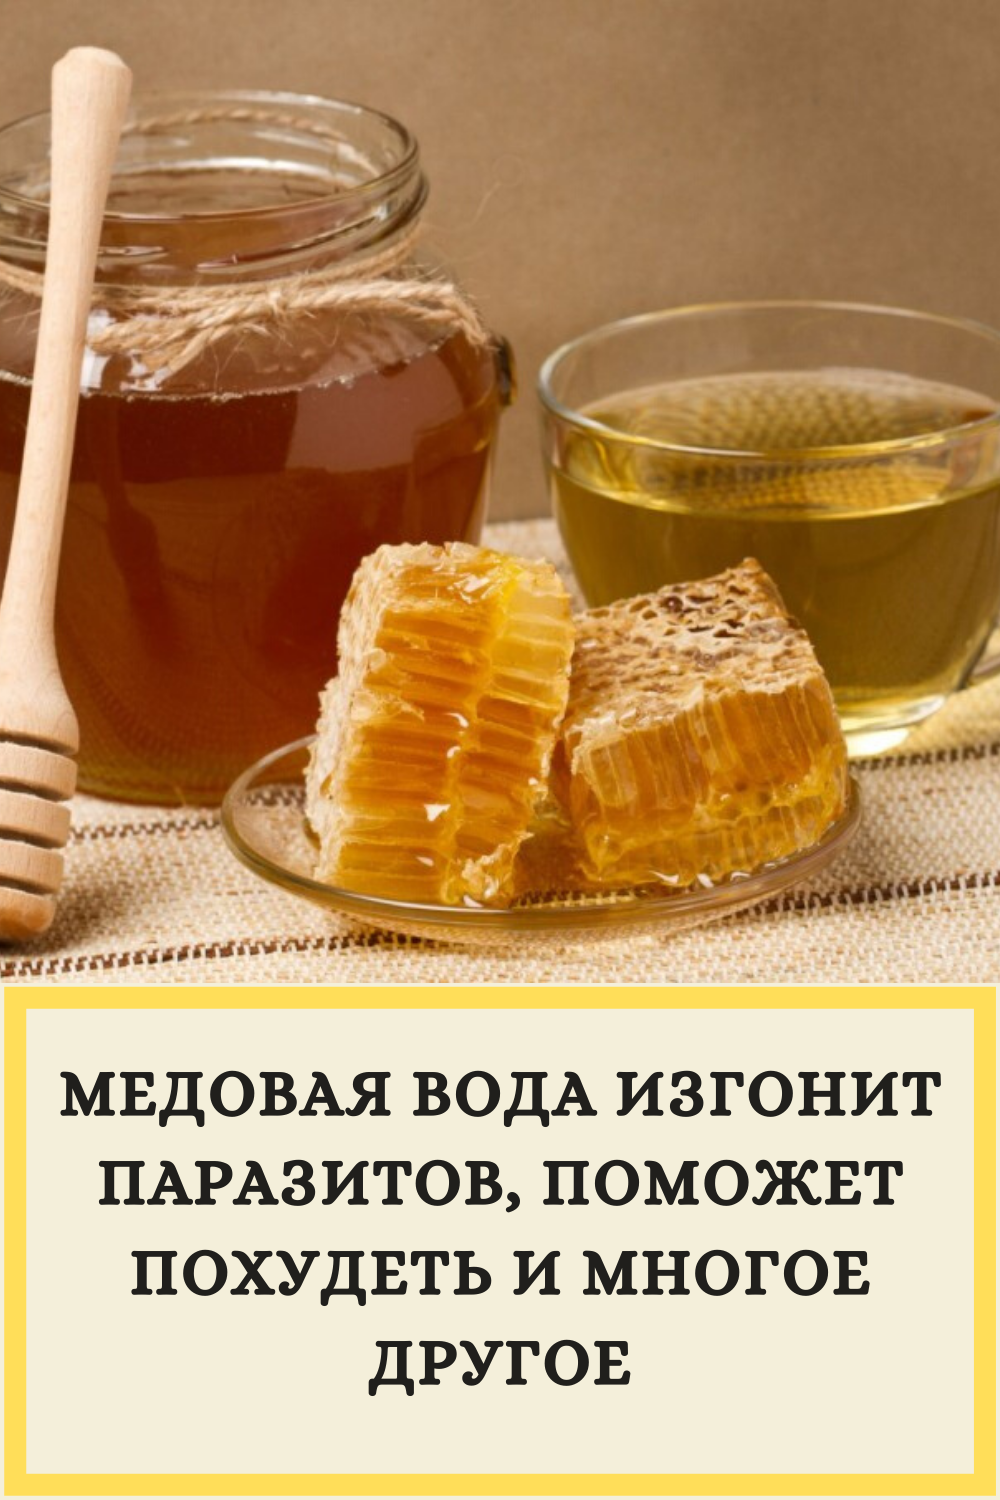 Мед разведенный водой. Мед фото. Медовая вода изгонит паразитов. Медовая вода от паразитов. Чай с медом.